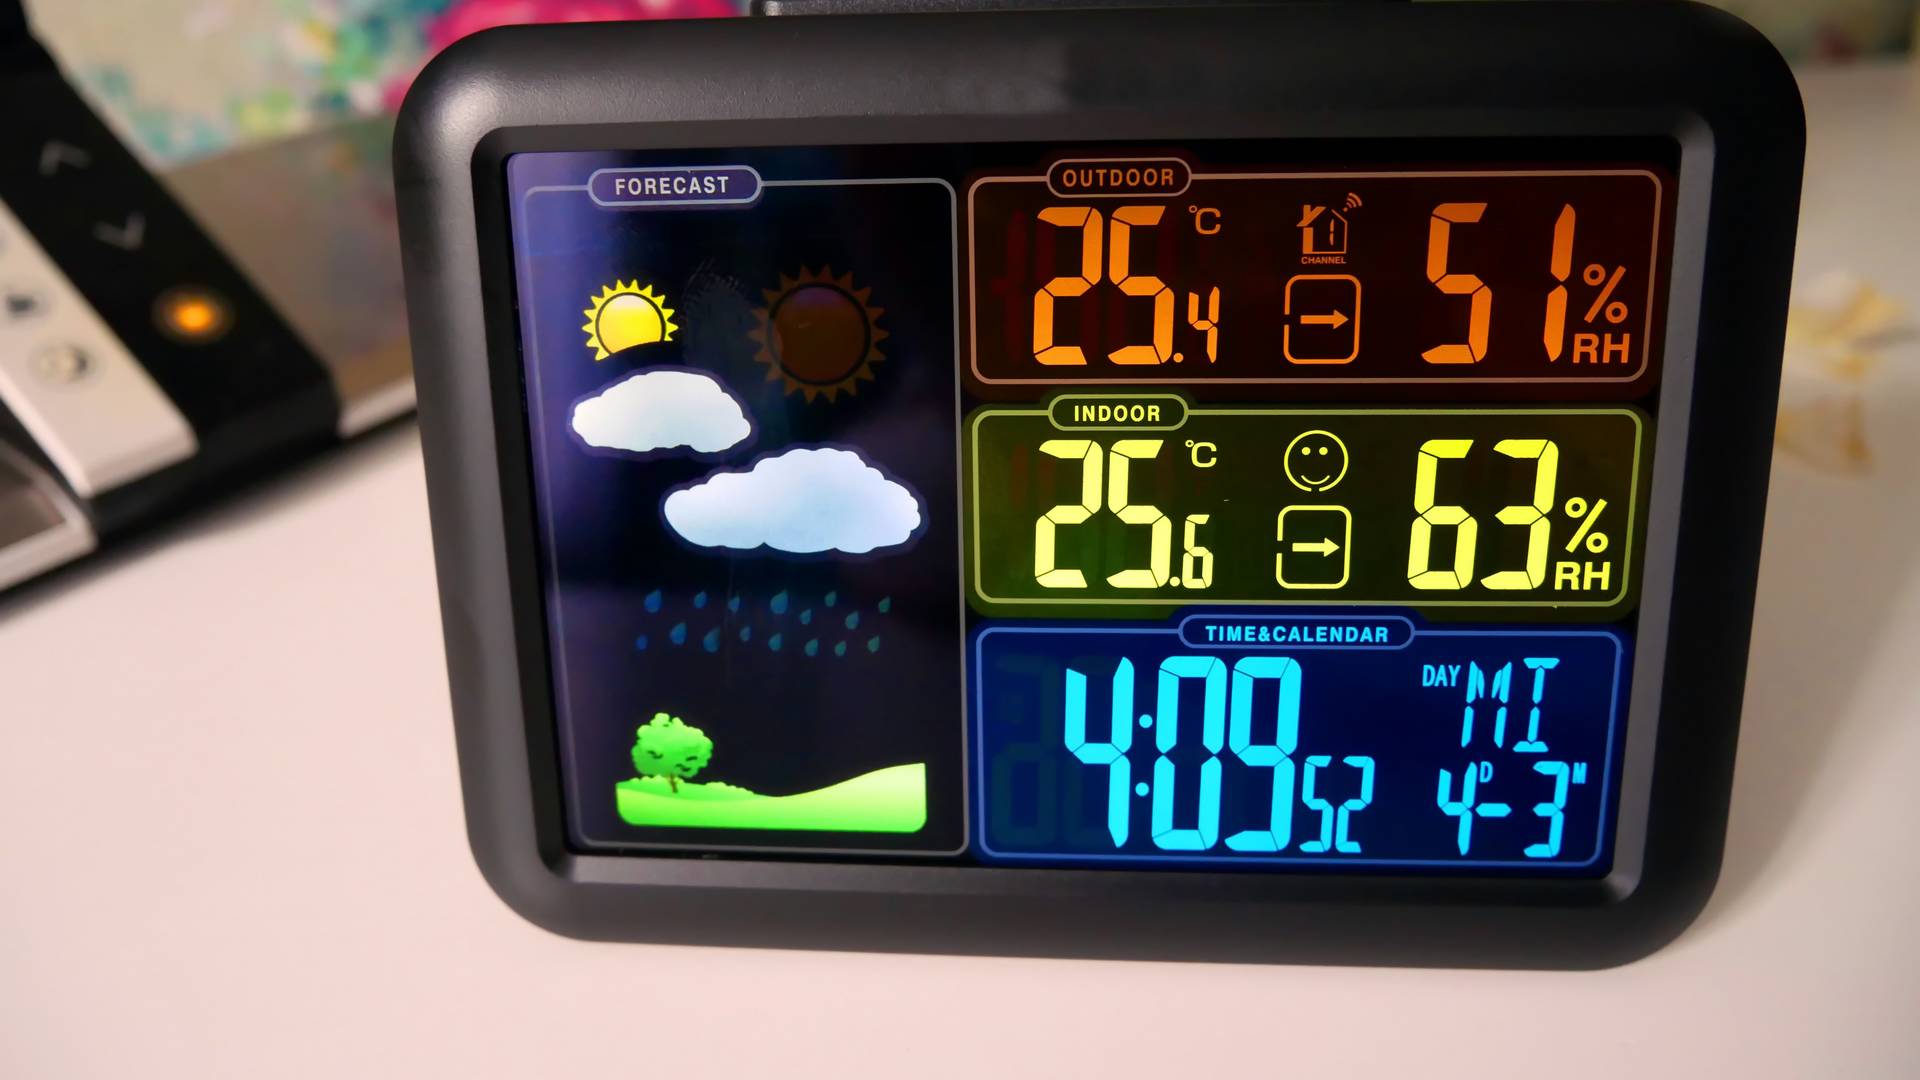 Stacja pogody to przydatny gadżet — zmierzy temperaturę w domu i na zewnątrz